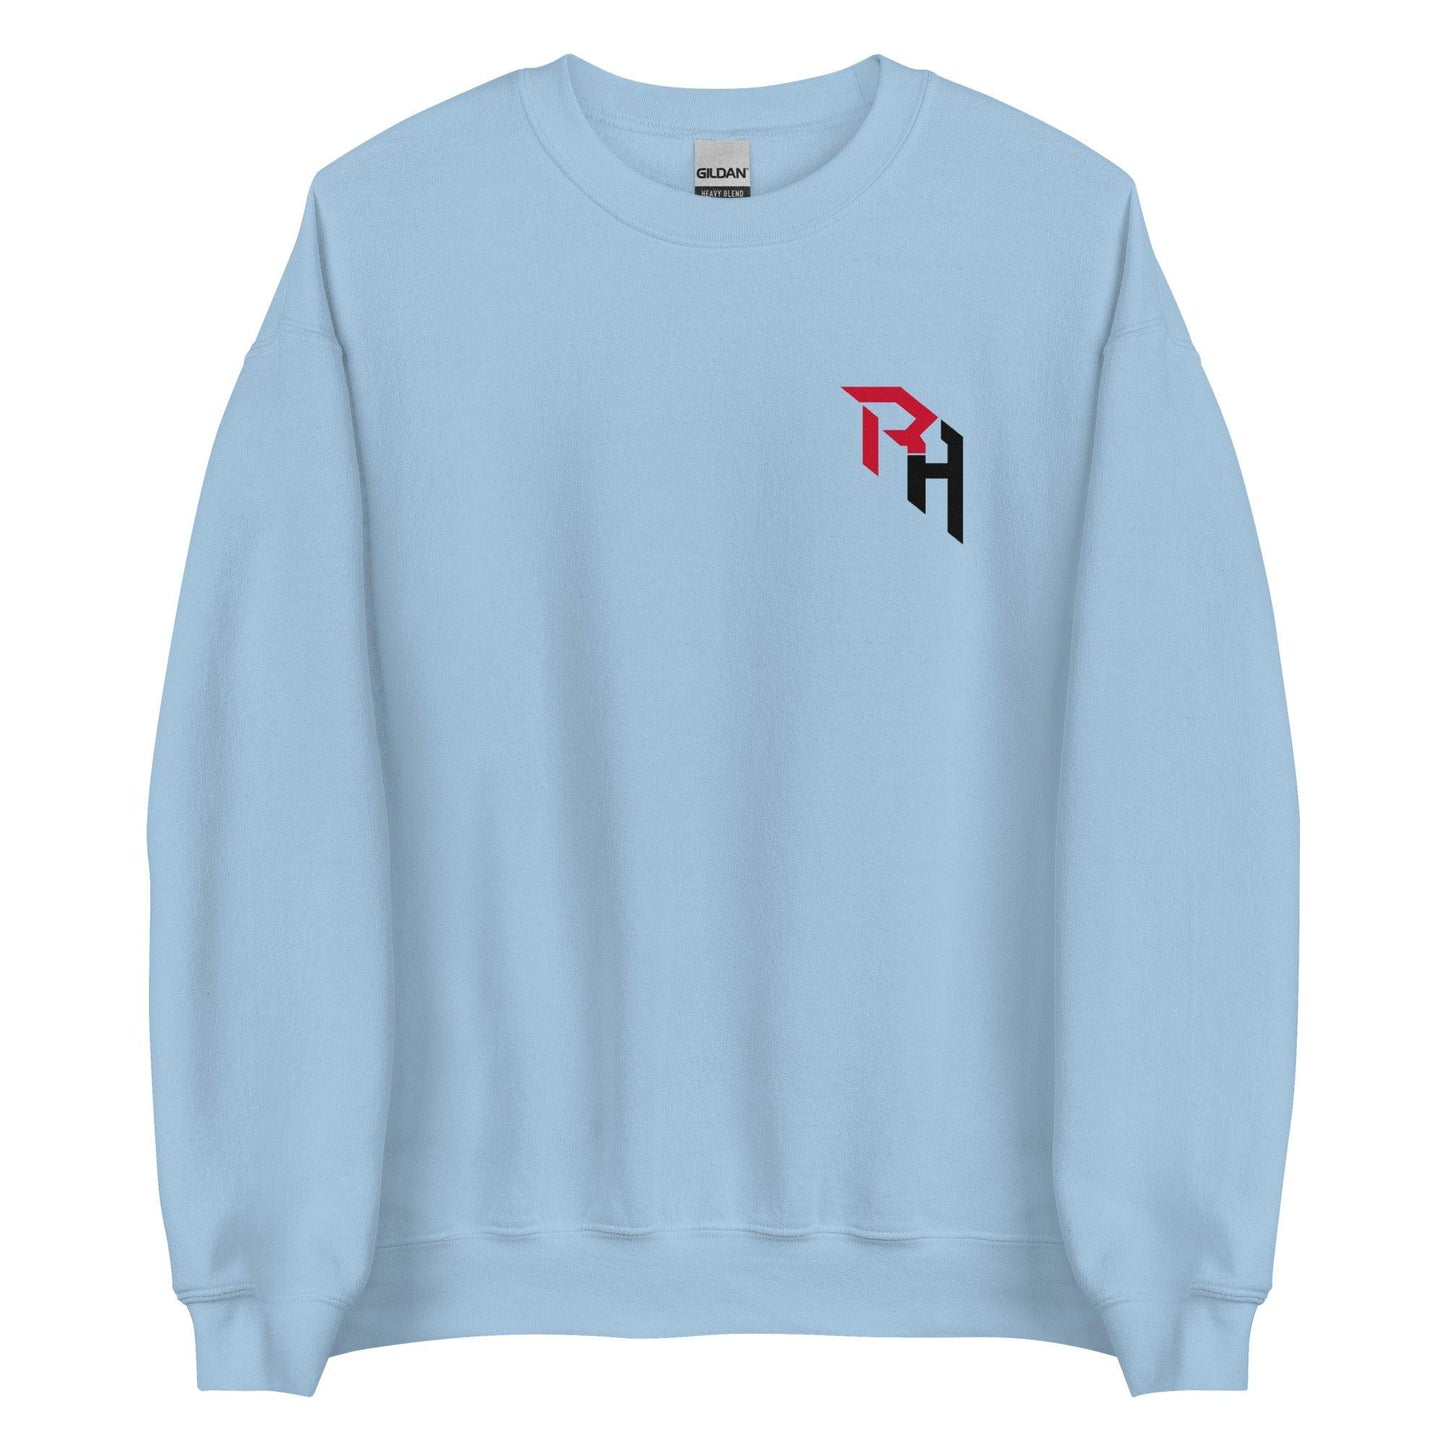 Rece Hinds "Elite" Sweatshirt - Fan Arch